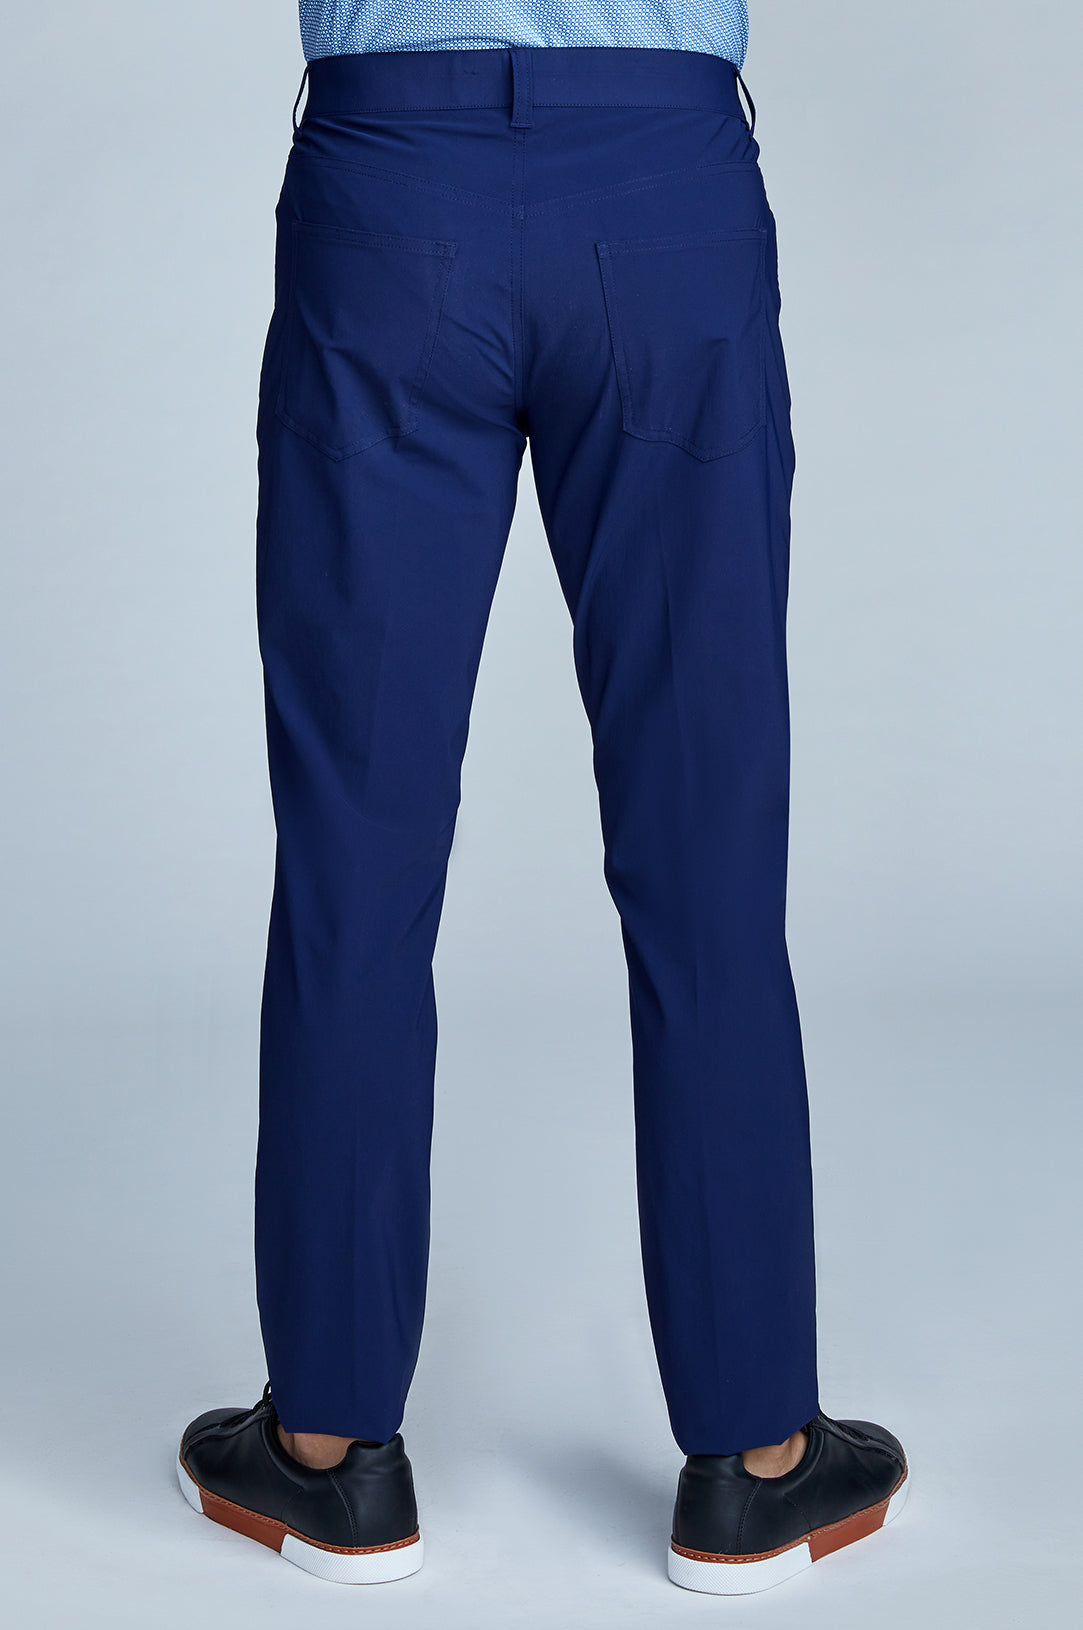 Navy blue cotton pants